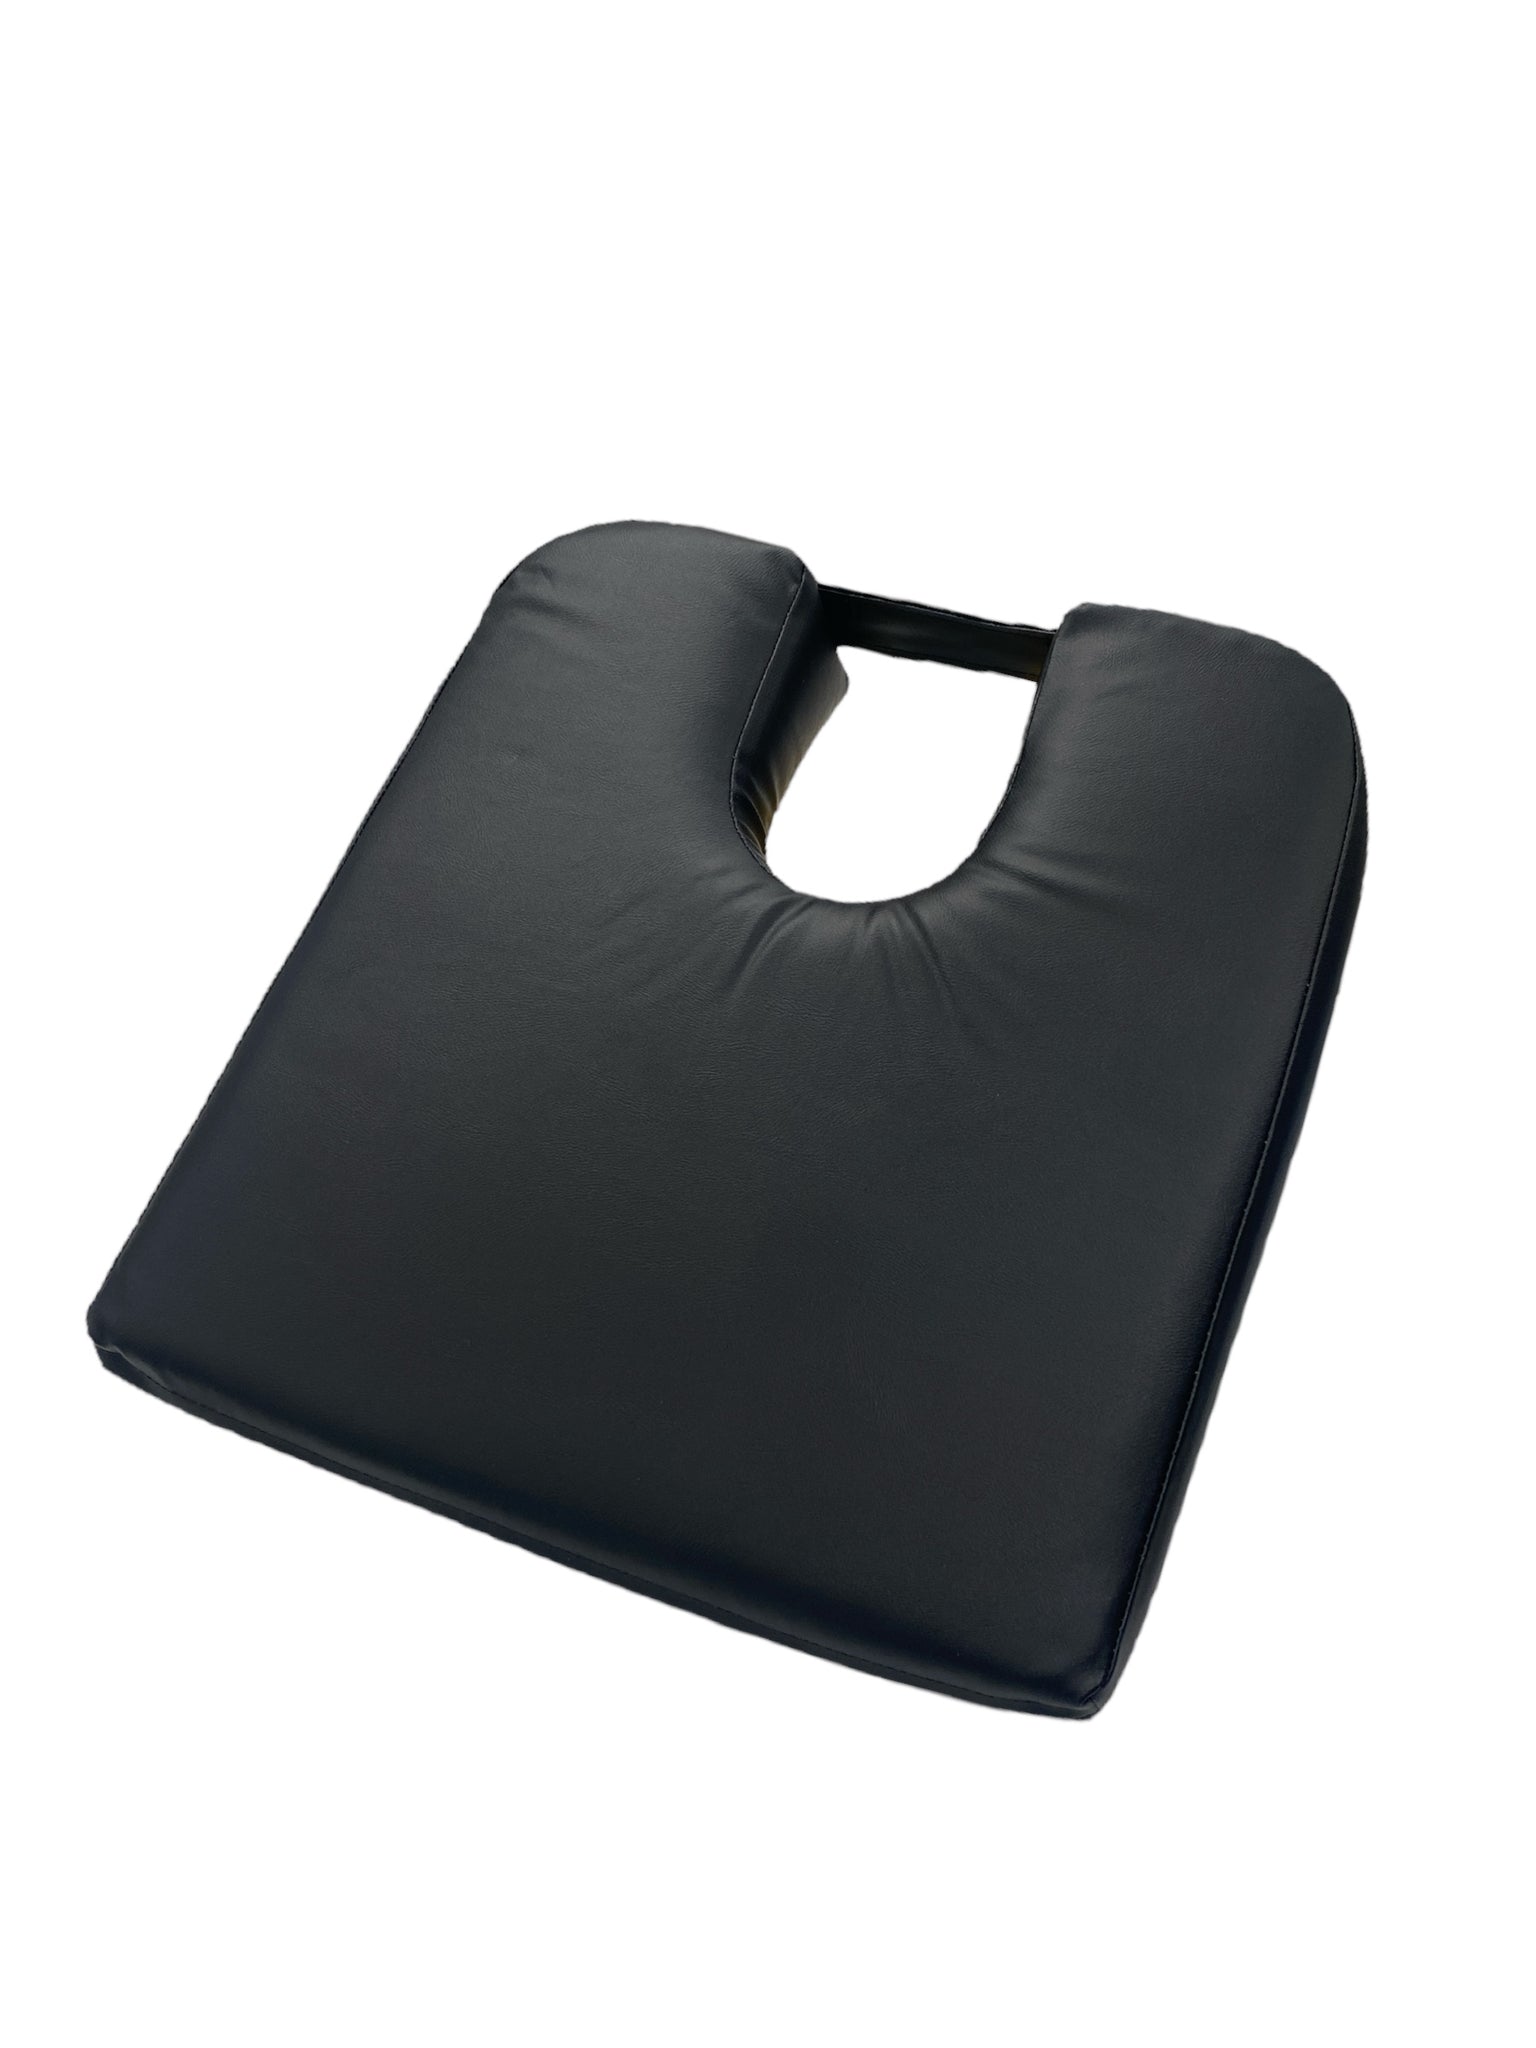 Tush-Cush® 15  Orthopedic seat cushion, Compact cars, Faux leather